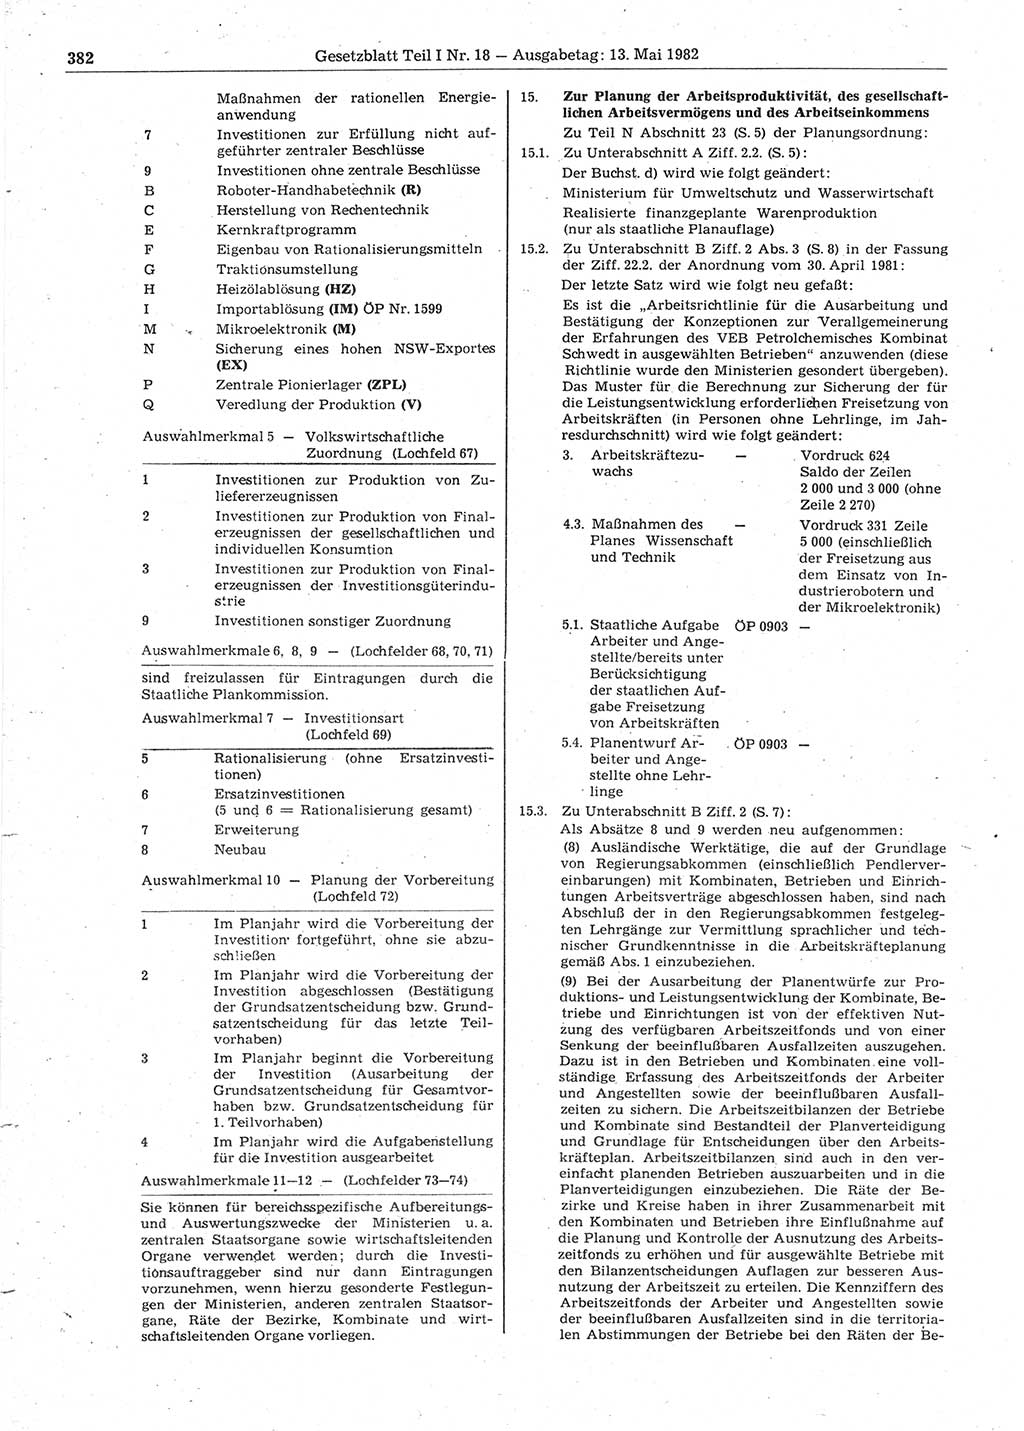 Gesetzblatt (GBl.) der Deutschen Demokratischen Republik (DDR) Teil Ⅰ 1982, Seite 382 (GBl. DDR Ⅰ 1982, S. 382)